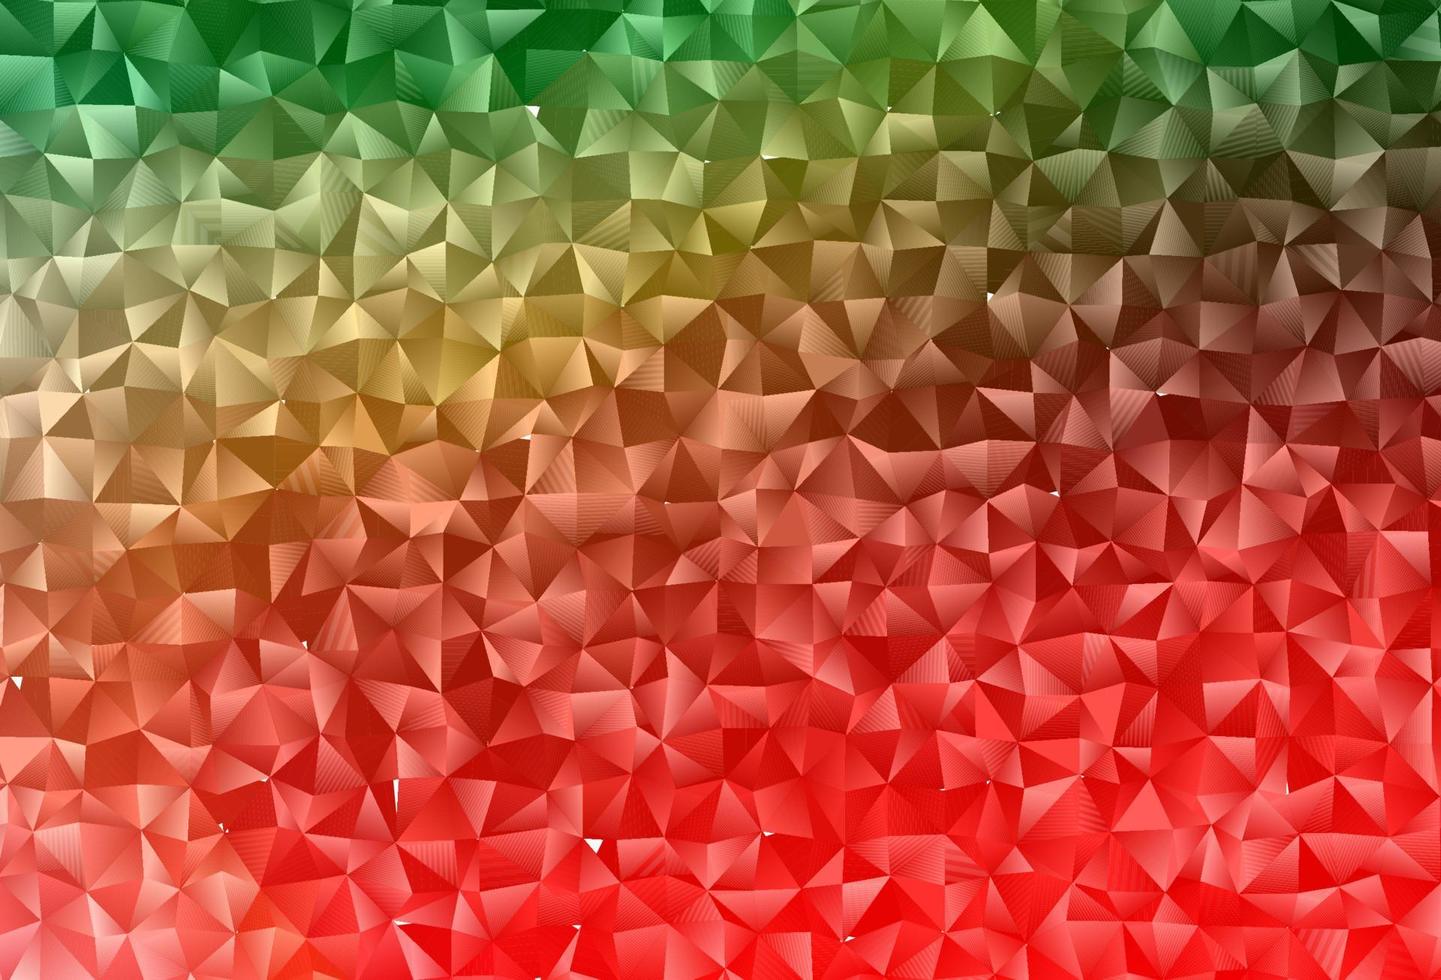 pano de fundo abstrato do polígono do vetor verde e vermelho claro.